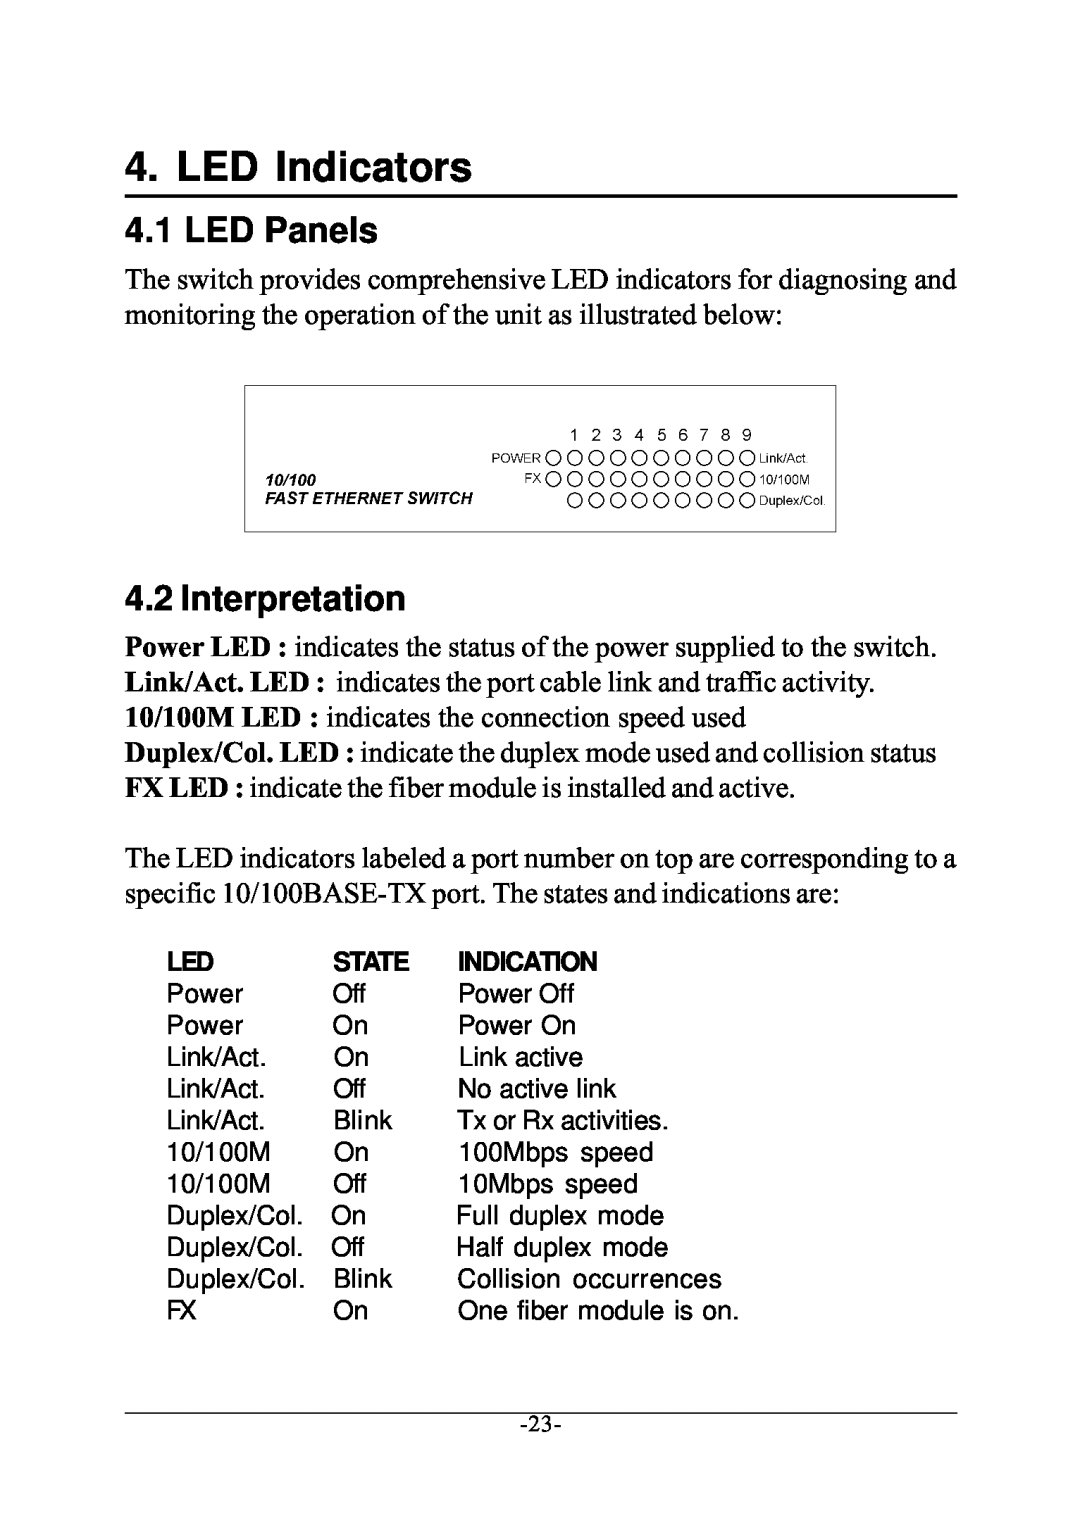 KTI Networks KS-801 manual LED Indicators, LED Panels, Interpretation 